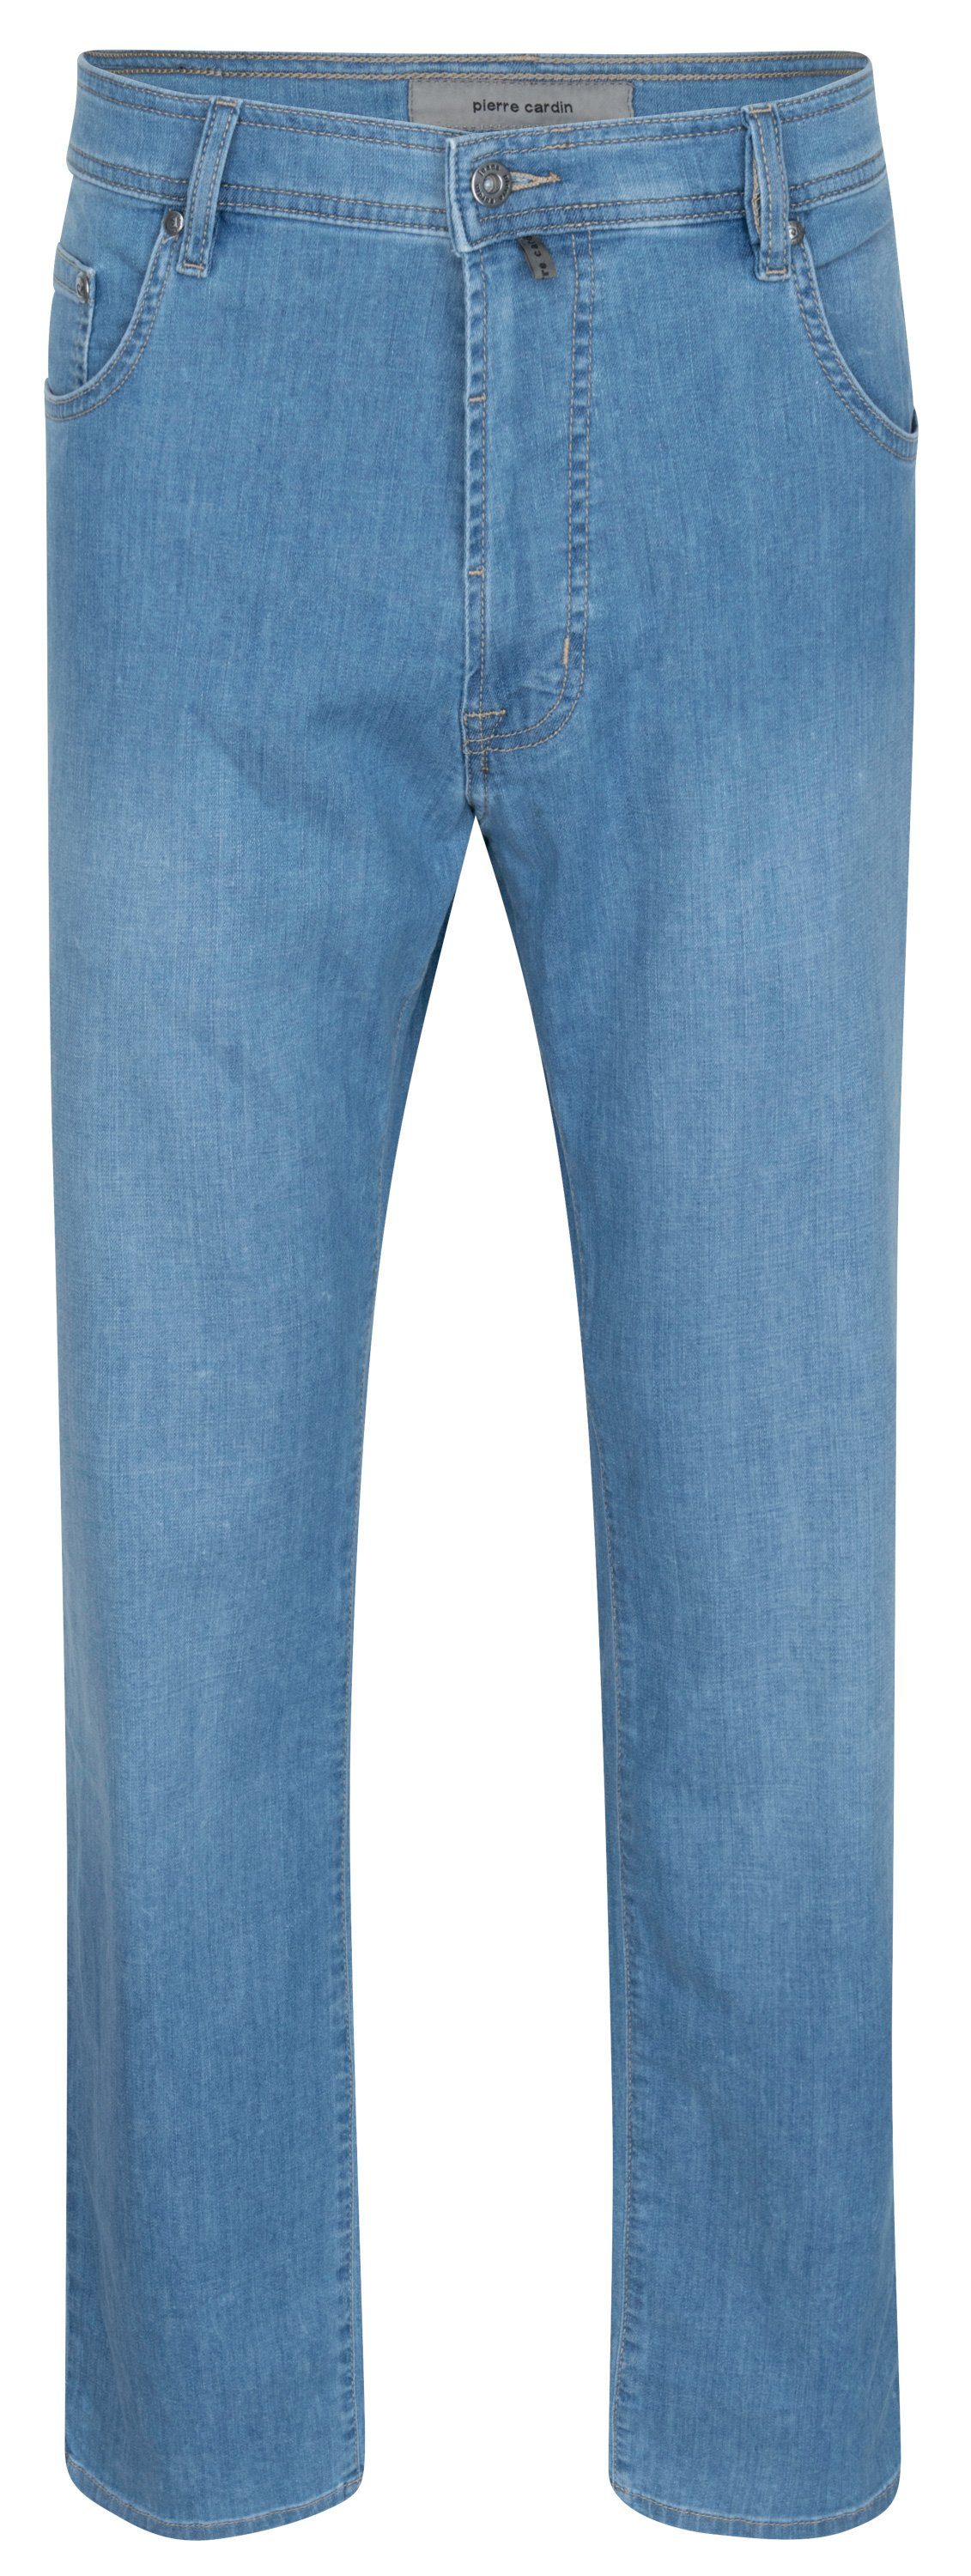 Pierre Cardin 5-Pocket-Jeans PIERRE CARDIN DIJON light blue used 32310 7731.6842 - Air Touch